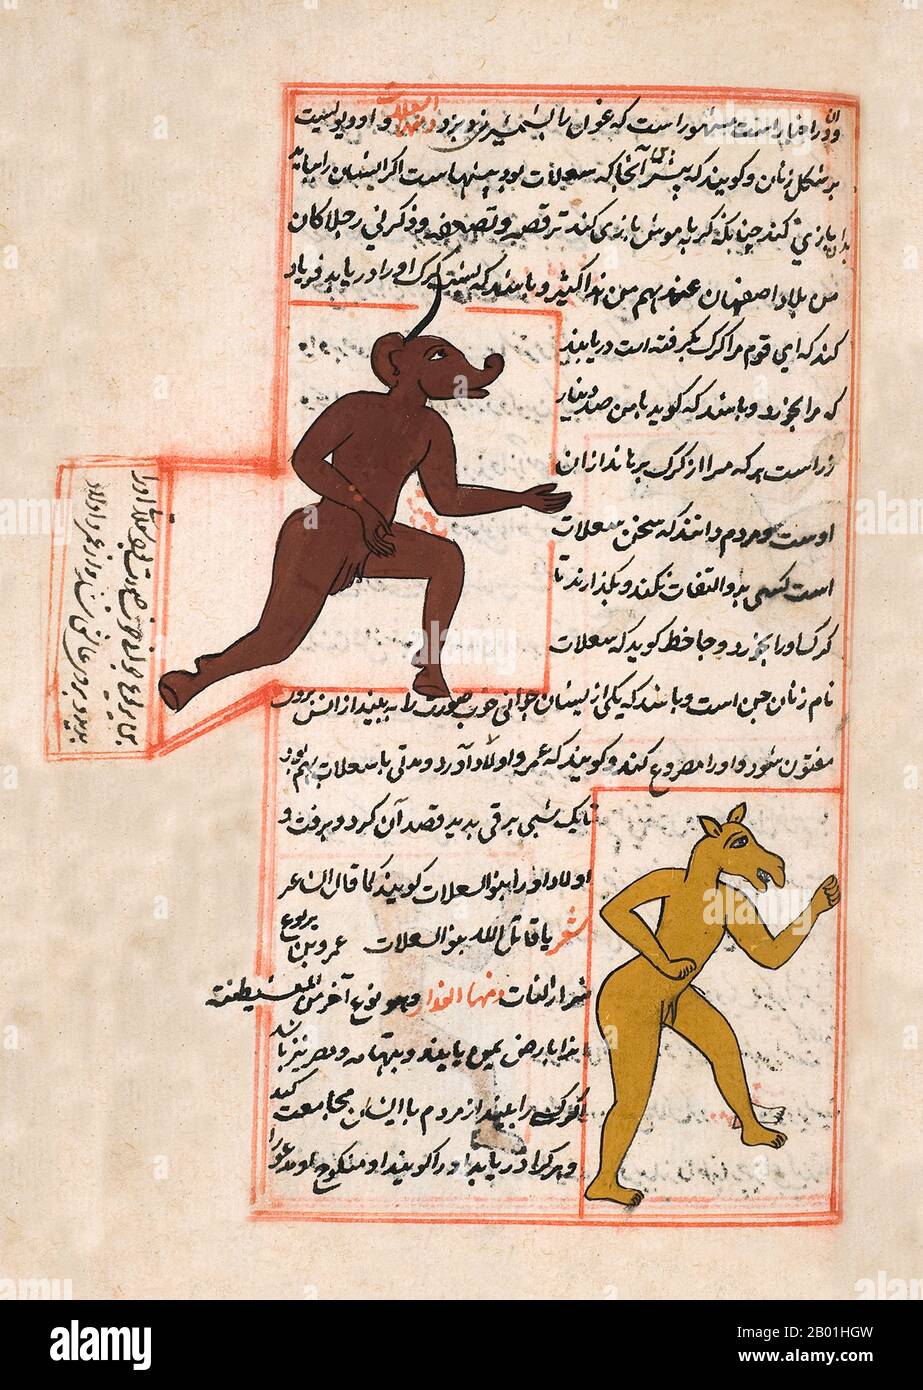 Iran/Persien: Illustration von Zakarīyā ibn Muḥammad al-Qazwīnī, „Ajā’ib al-makhlūqāt wa-gharā’ib al-mawjūdāt (Wunder der geschaffenen Dinge und wundersame Aspekte der bestehenden Dinge) c. 1250 CE. Abu Yahya Zakariya' ibn Muhammad al-Qazwini (1203-1283) war ein persischer Arzt, Astronome, Geografin und Proto-Science-Fiction-Autor. Er wurde in der persischen Stadt Qazvin geboren und diente als Rechtsexperte und Richter (qadhi) an mehreren Orten in Persien und Bagdad. Er reiste durch Mesopotamien und Syrien und betrat schließlich den Kreis, der vom Gouverneur von Bagdad bevormundet wurde. Stockfoto